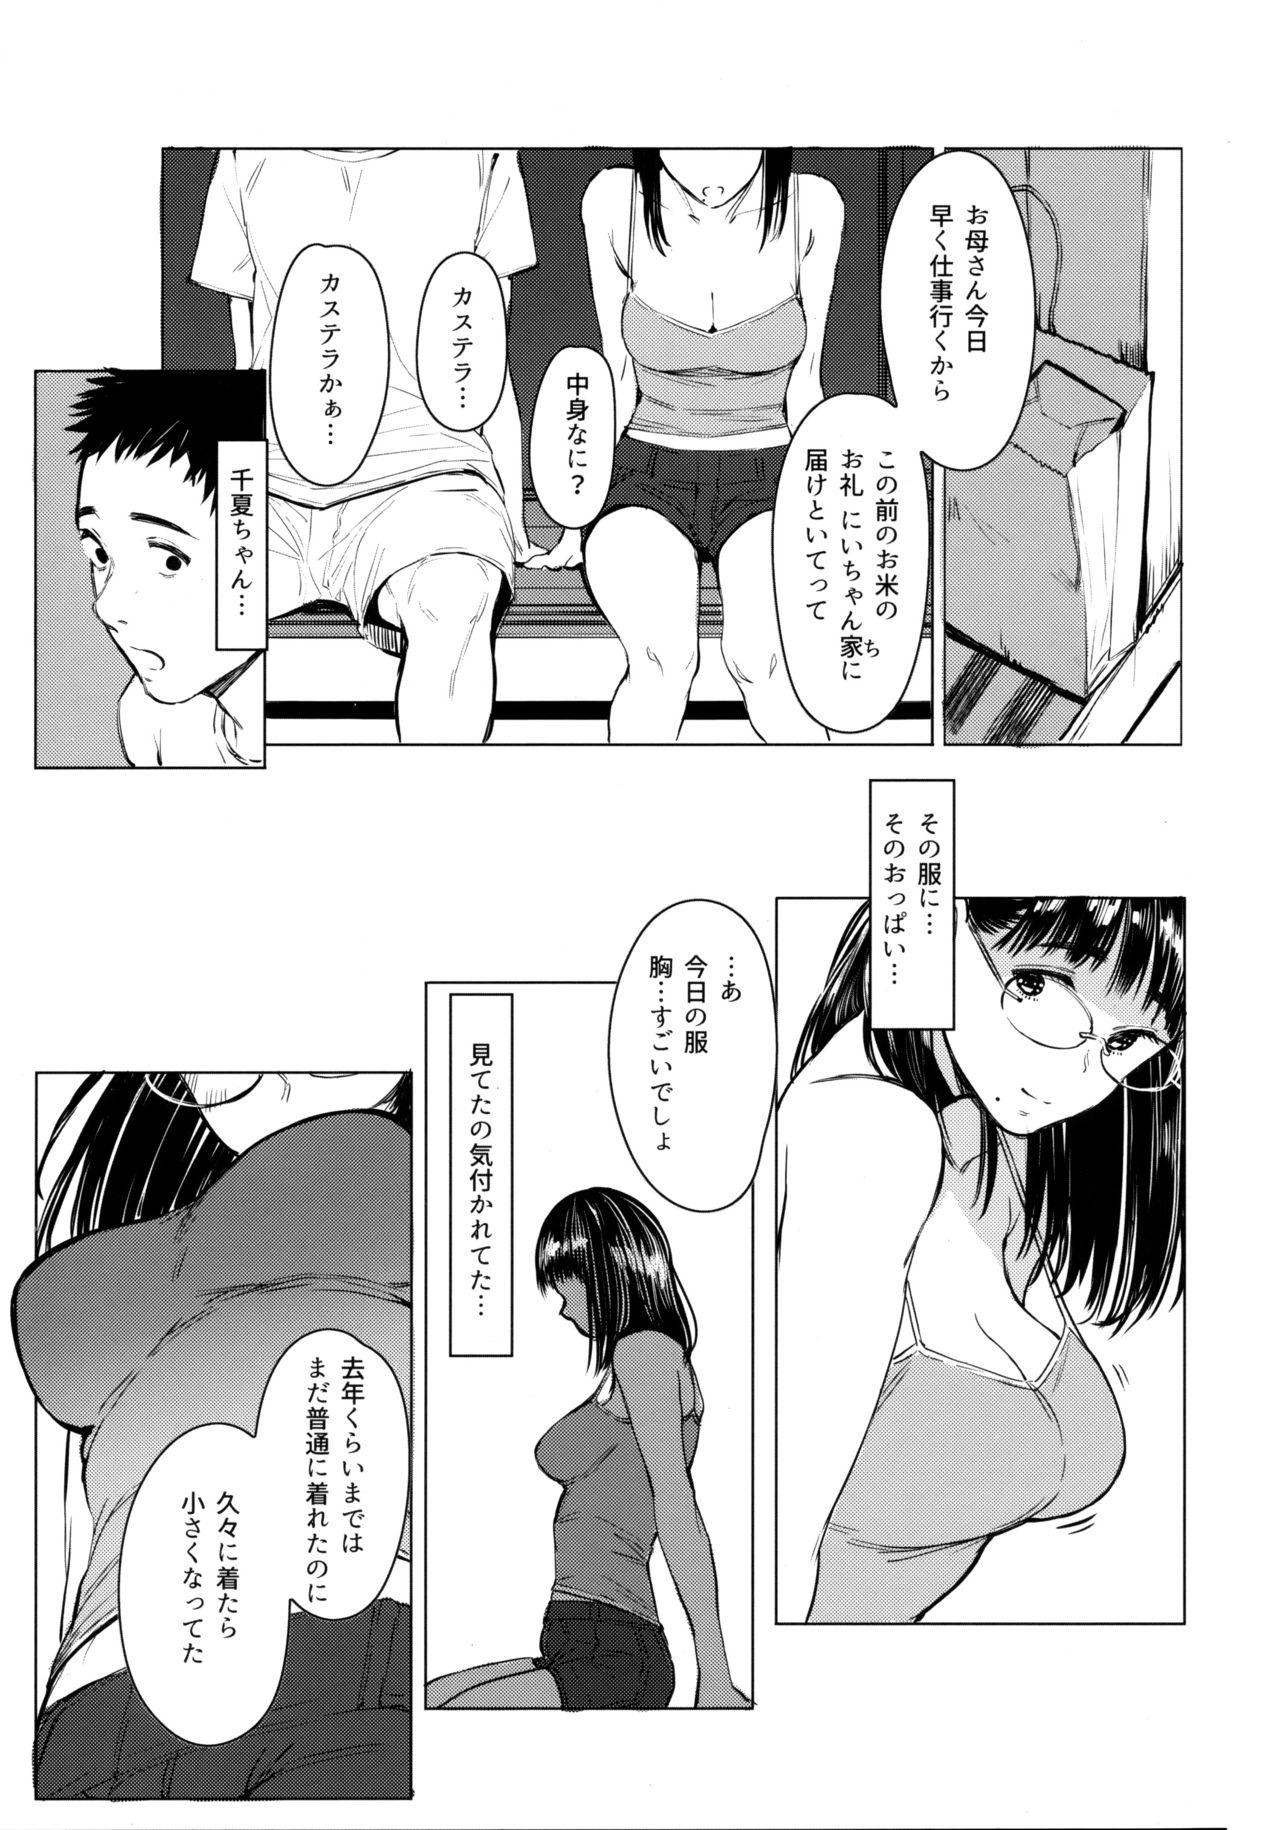 19yo Tonari no Chinatsu-chan R 05 - Original One - Page 10